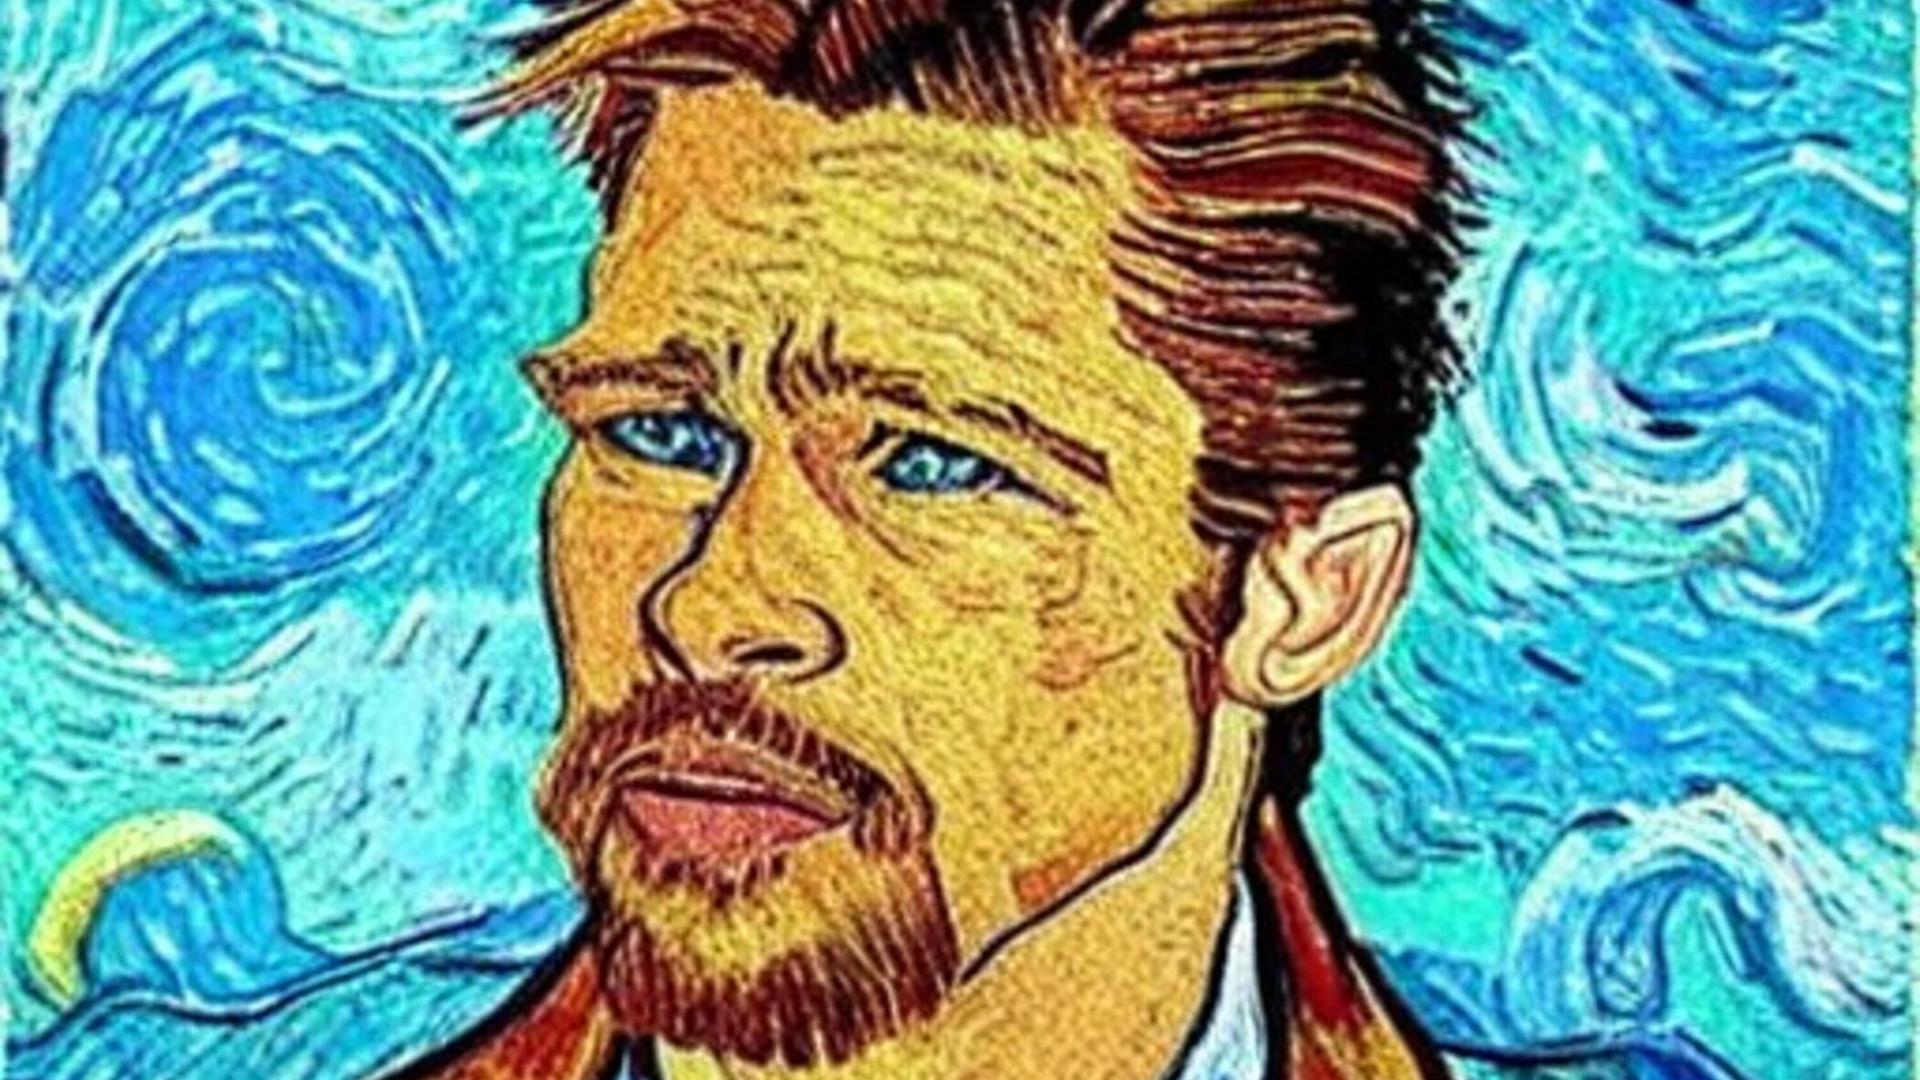 Ein von der Software Stble Diffusion erzeugtes Bild: Ein Porträt des Schauspielers Brad Pitt im Stil von Vincent van Gogh